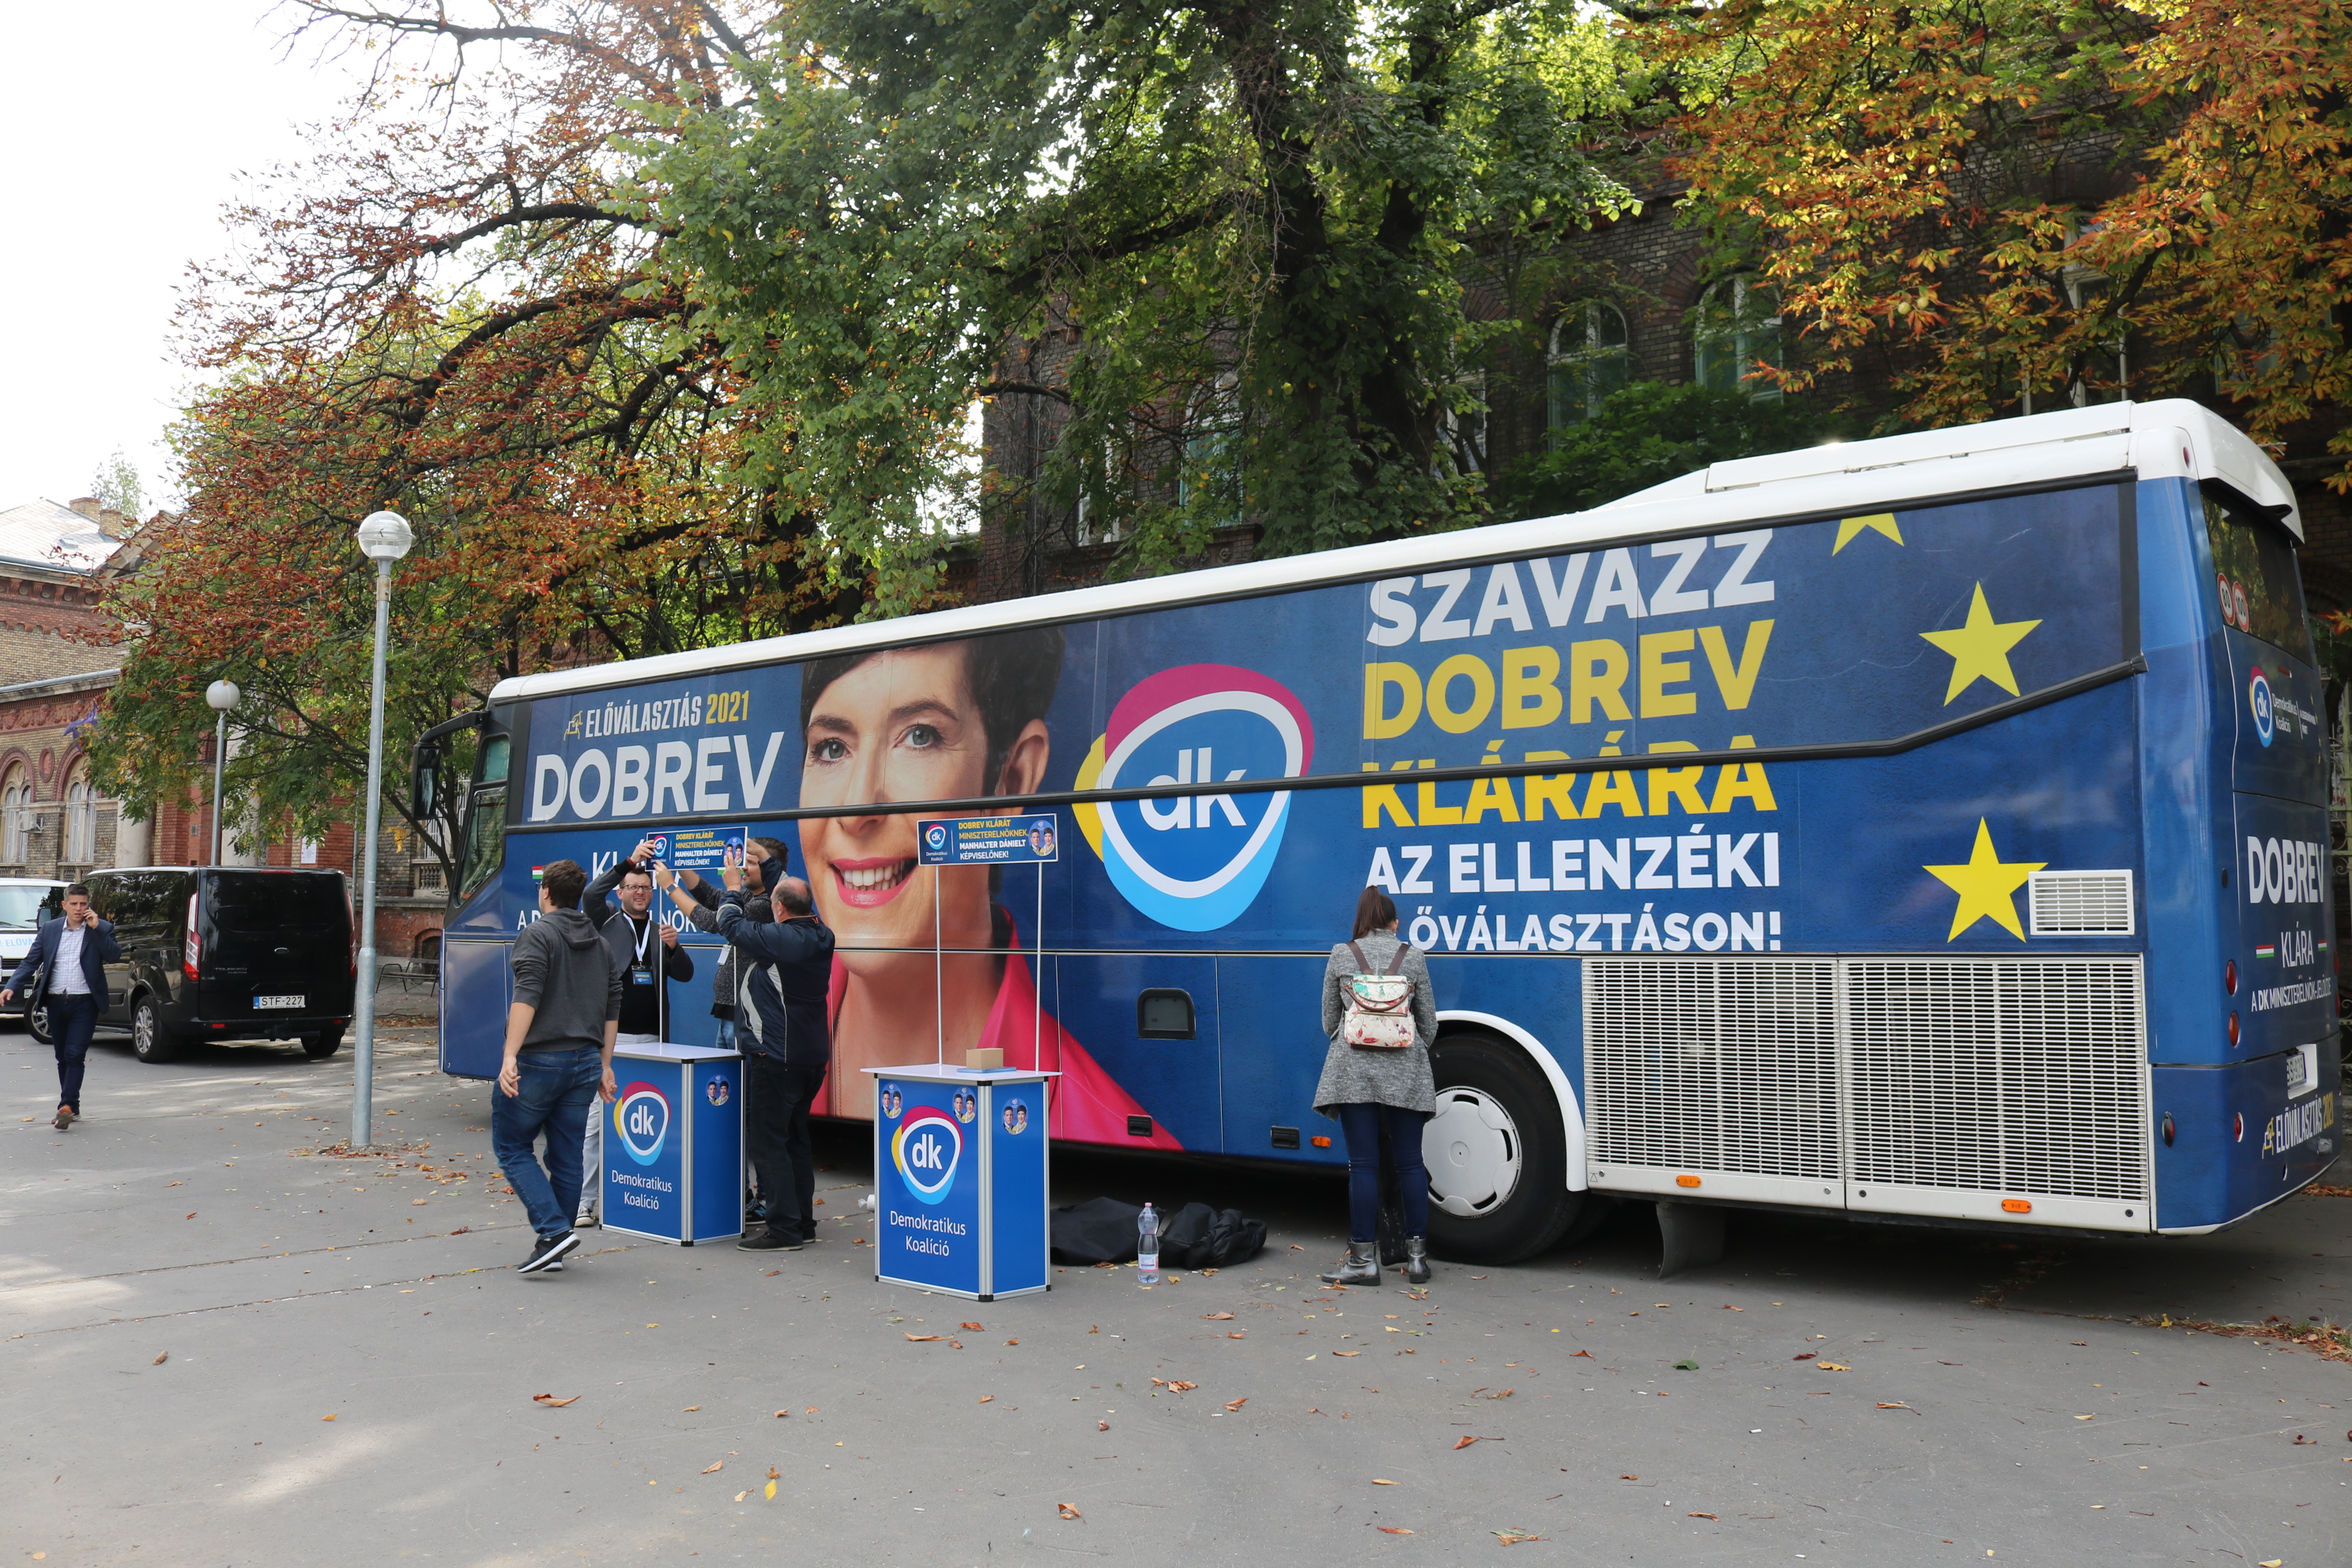 Kicsivel Jámborék eseménye után már a közeli Nagyvárad téren is nagy volt a készülődés: ide Dobrev Klárát várták a DK-sok, kampánybusza már jóval az esemény előtt leparkolt.